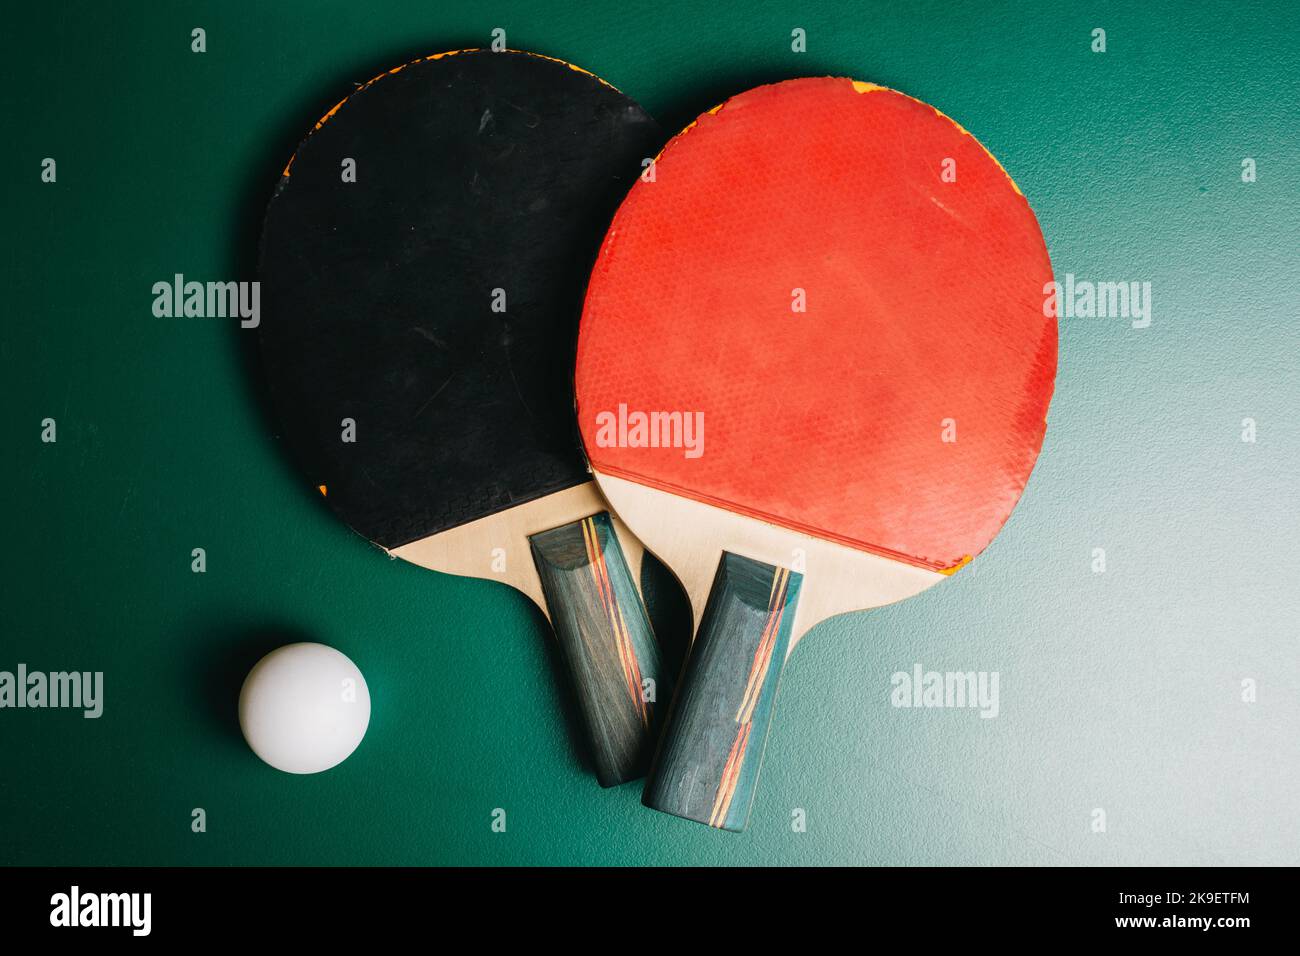 Dos raquetas de ping pong y una pelota están en la mesa de juegos verde Foto de stock